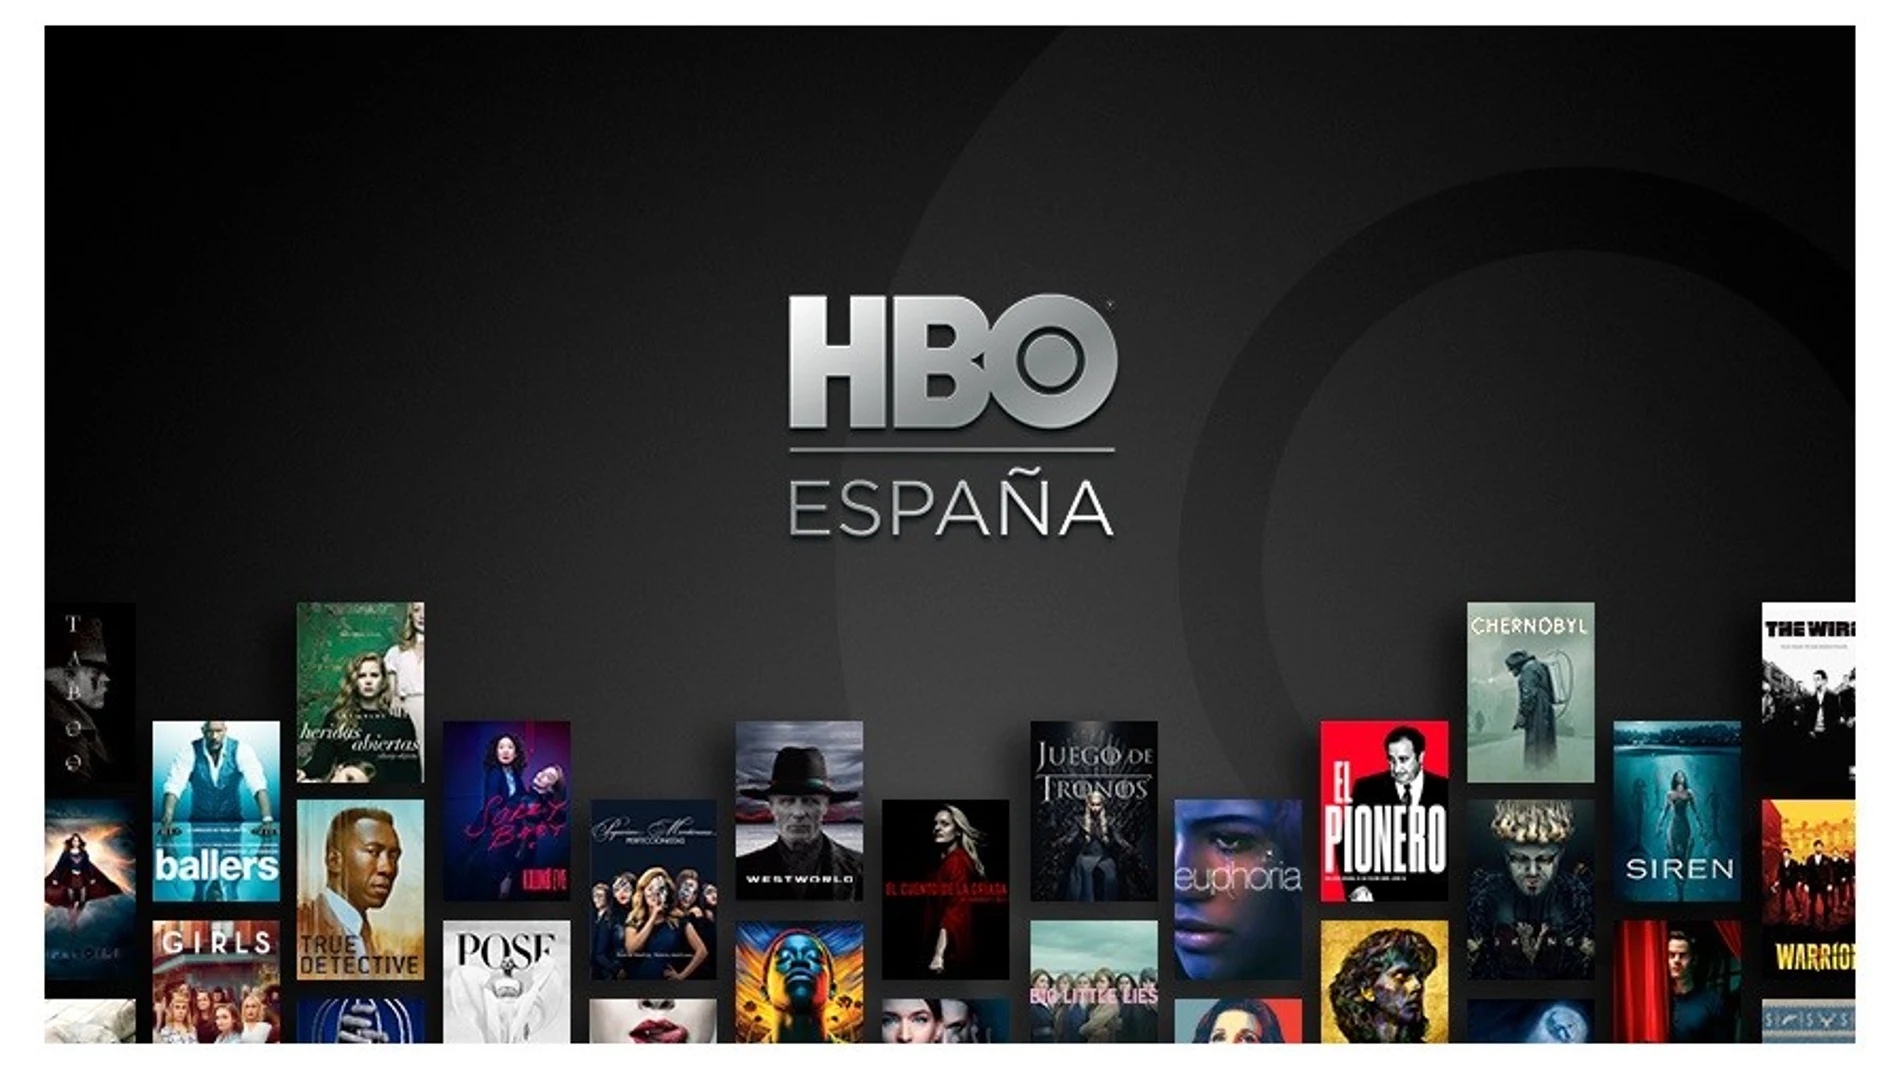 La 'app' de HBO España ya permite descargar contenidos para verlos sin conexión